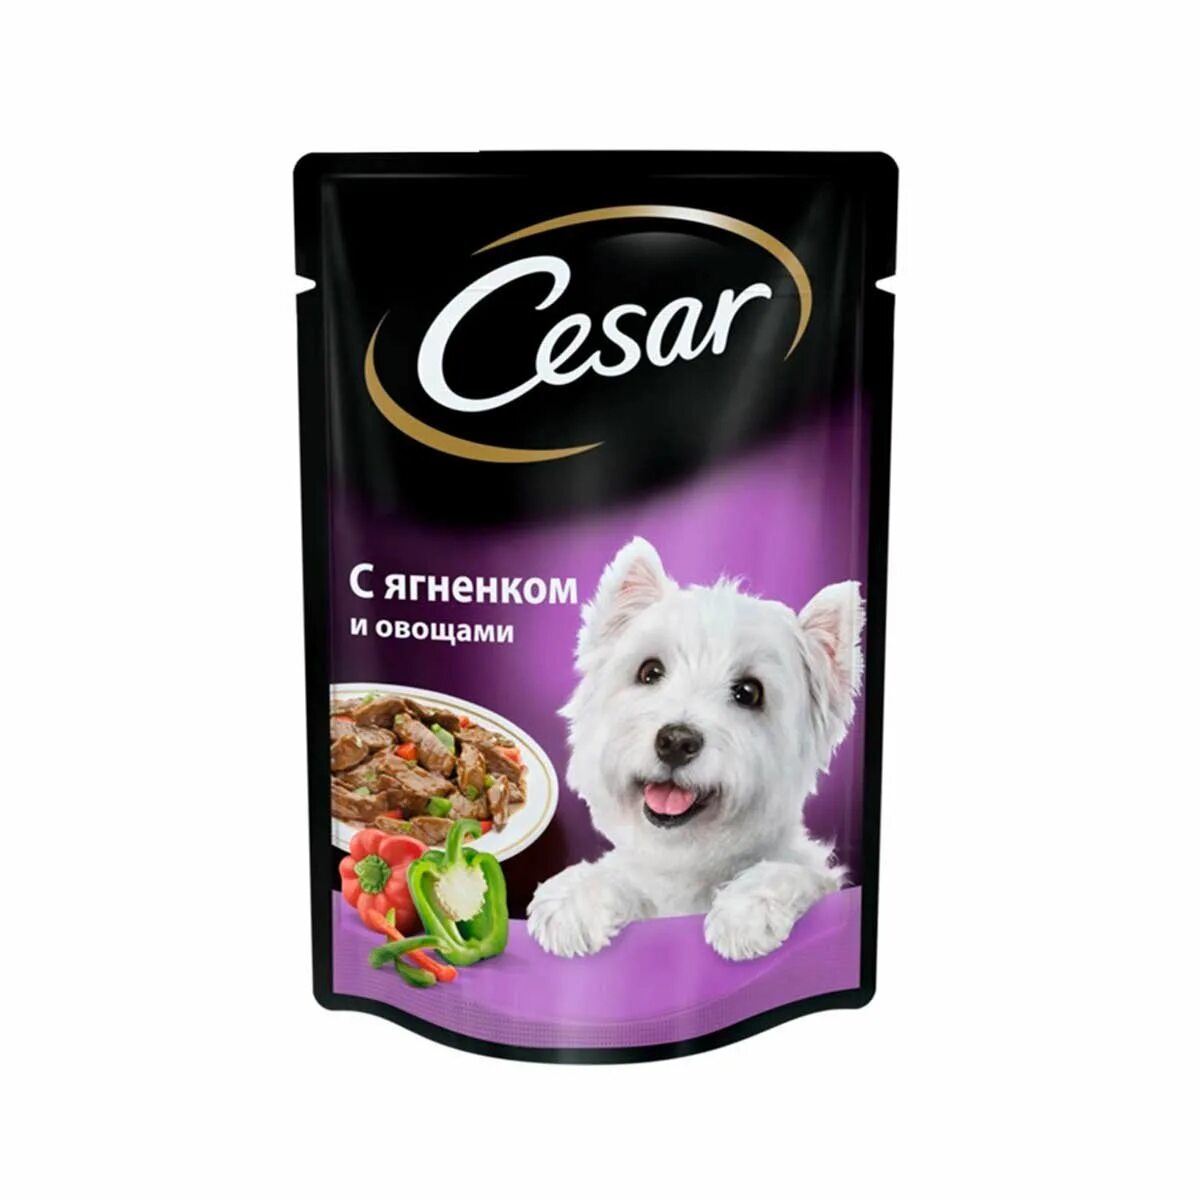 Влажный корм для собак Cesar. Сезар корм влажный для собак. Cesar д/с жаркое с уткой м/п 85г/28. Cesar для собак 85г. Корм для собаки тула